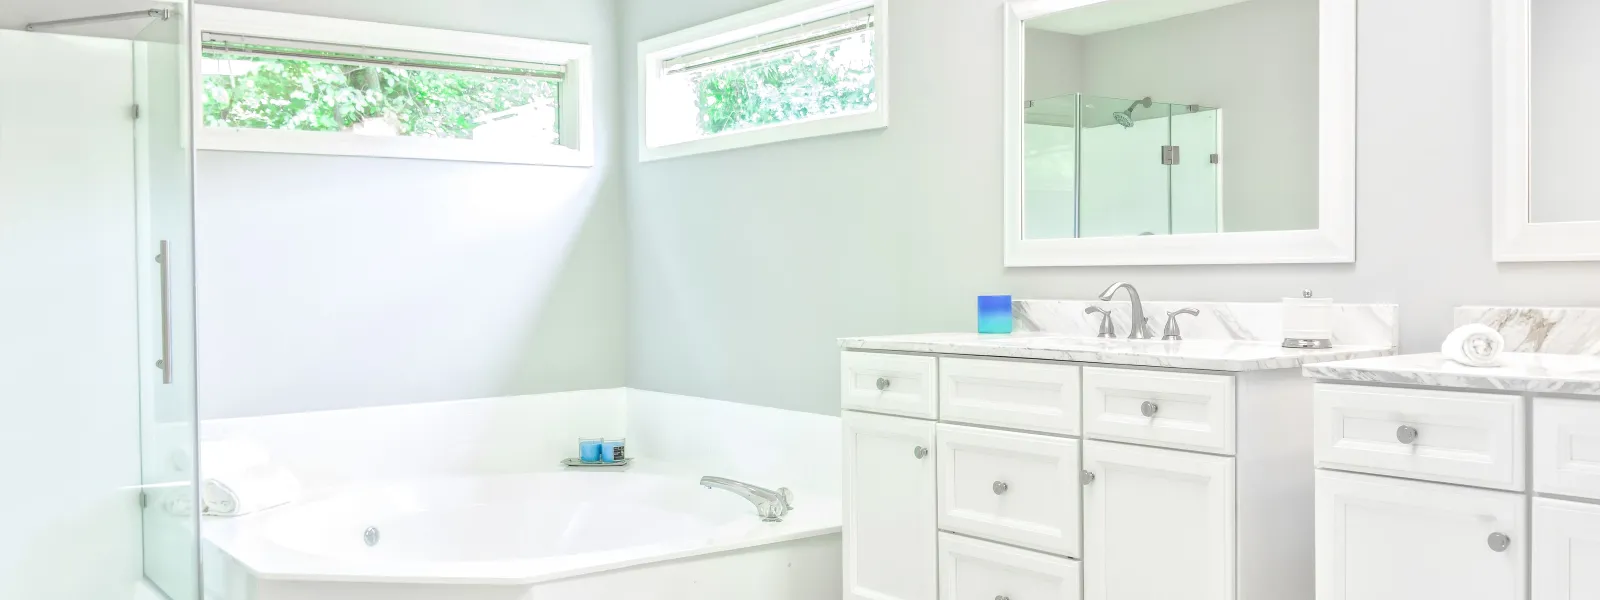 Affordable Bathroom Remodel Ideas